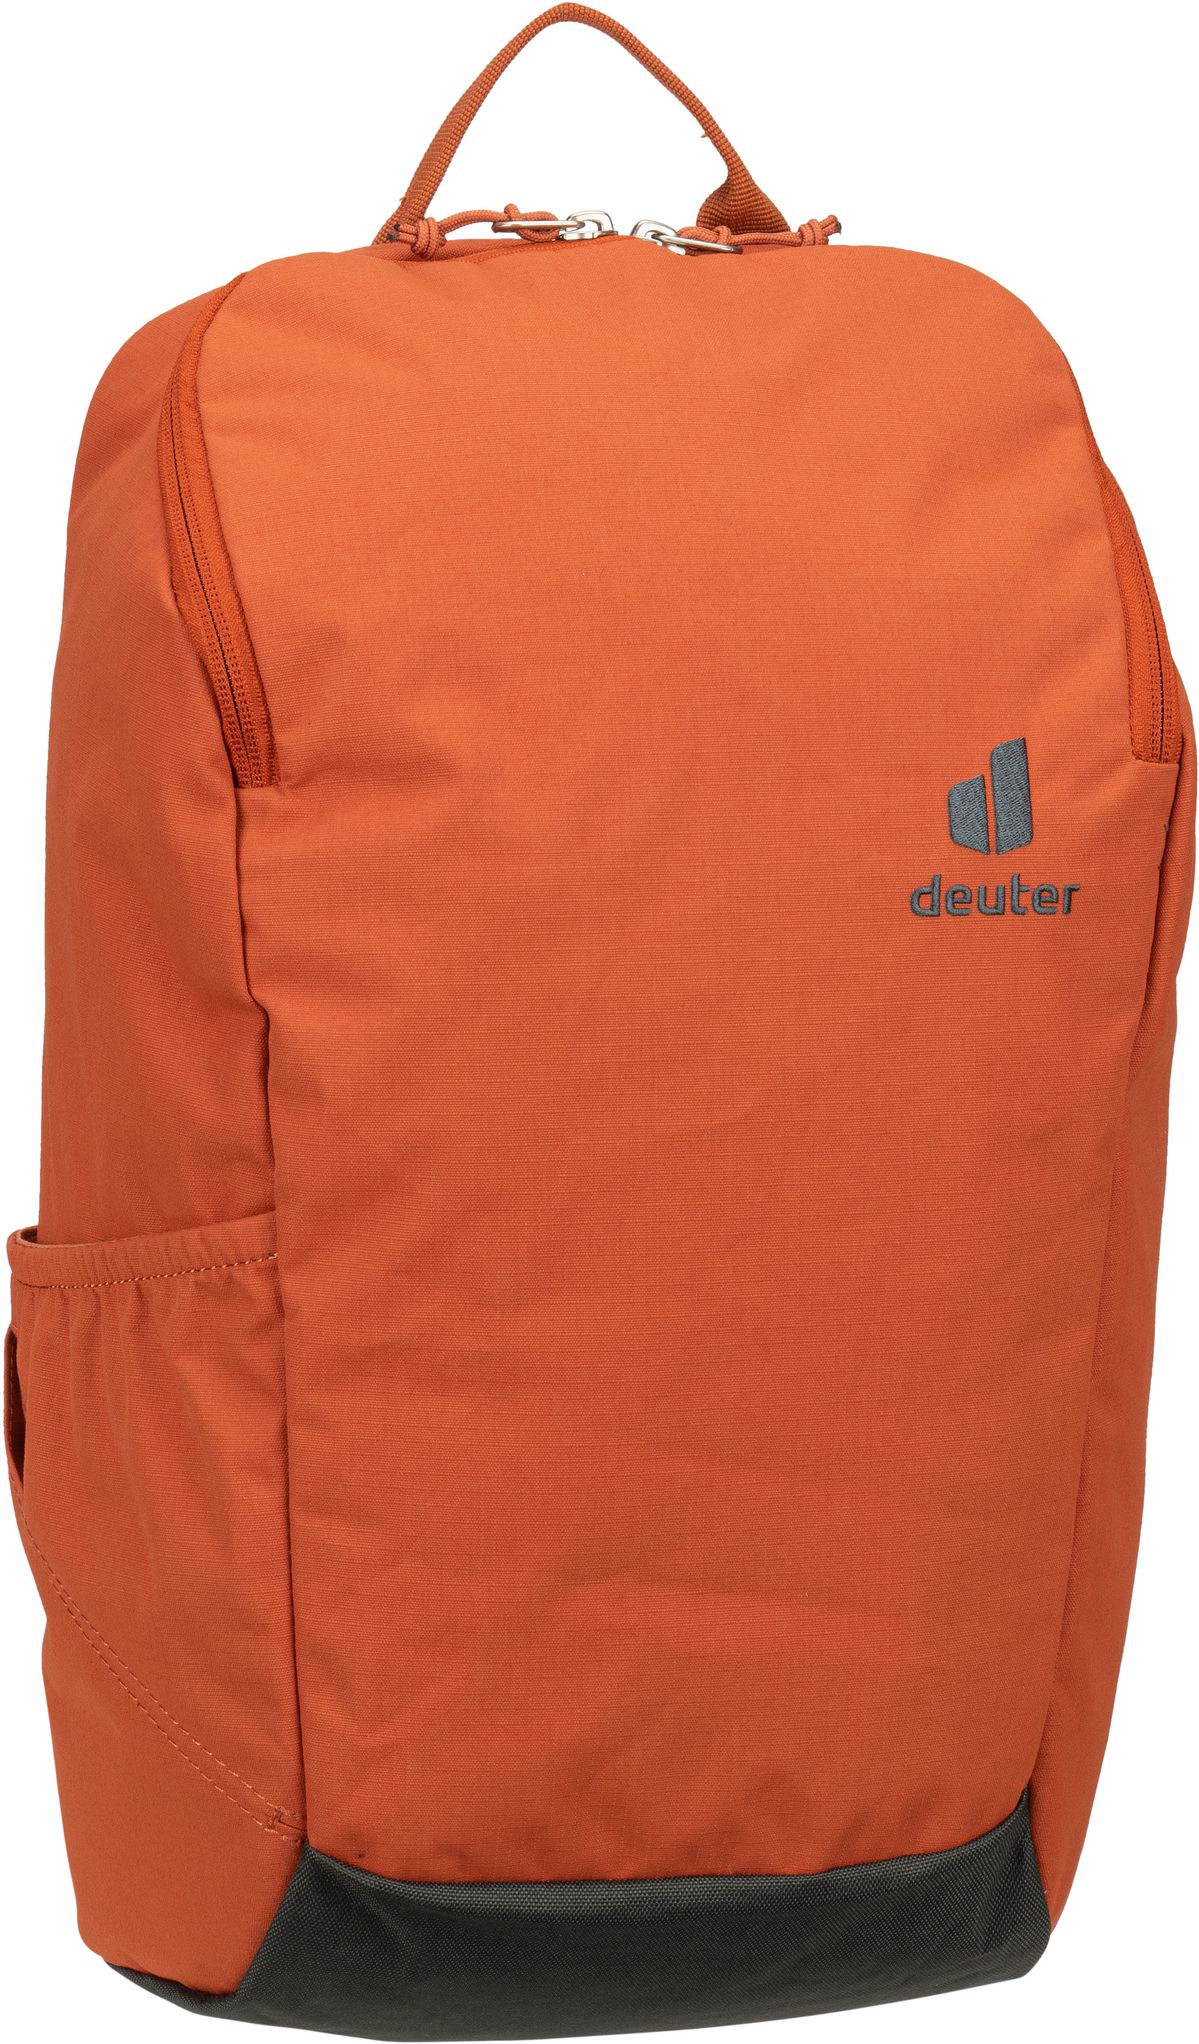 Deuter Stepout 16  in Orange (16 Liter), Rucksack / Backpack